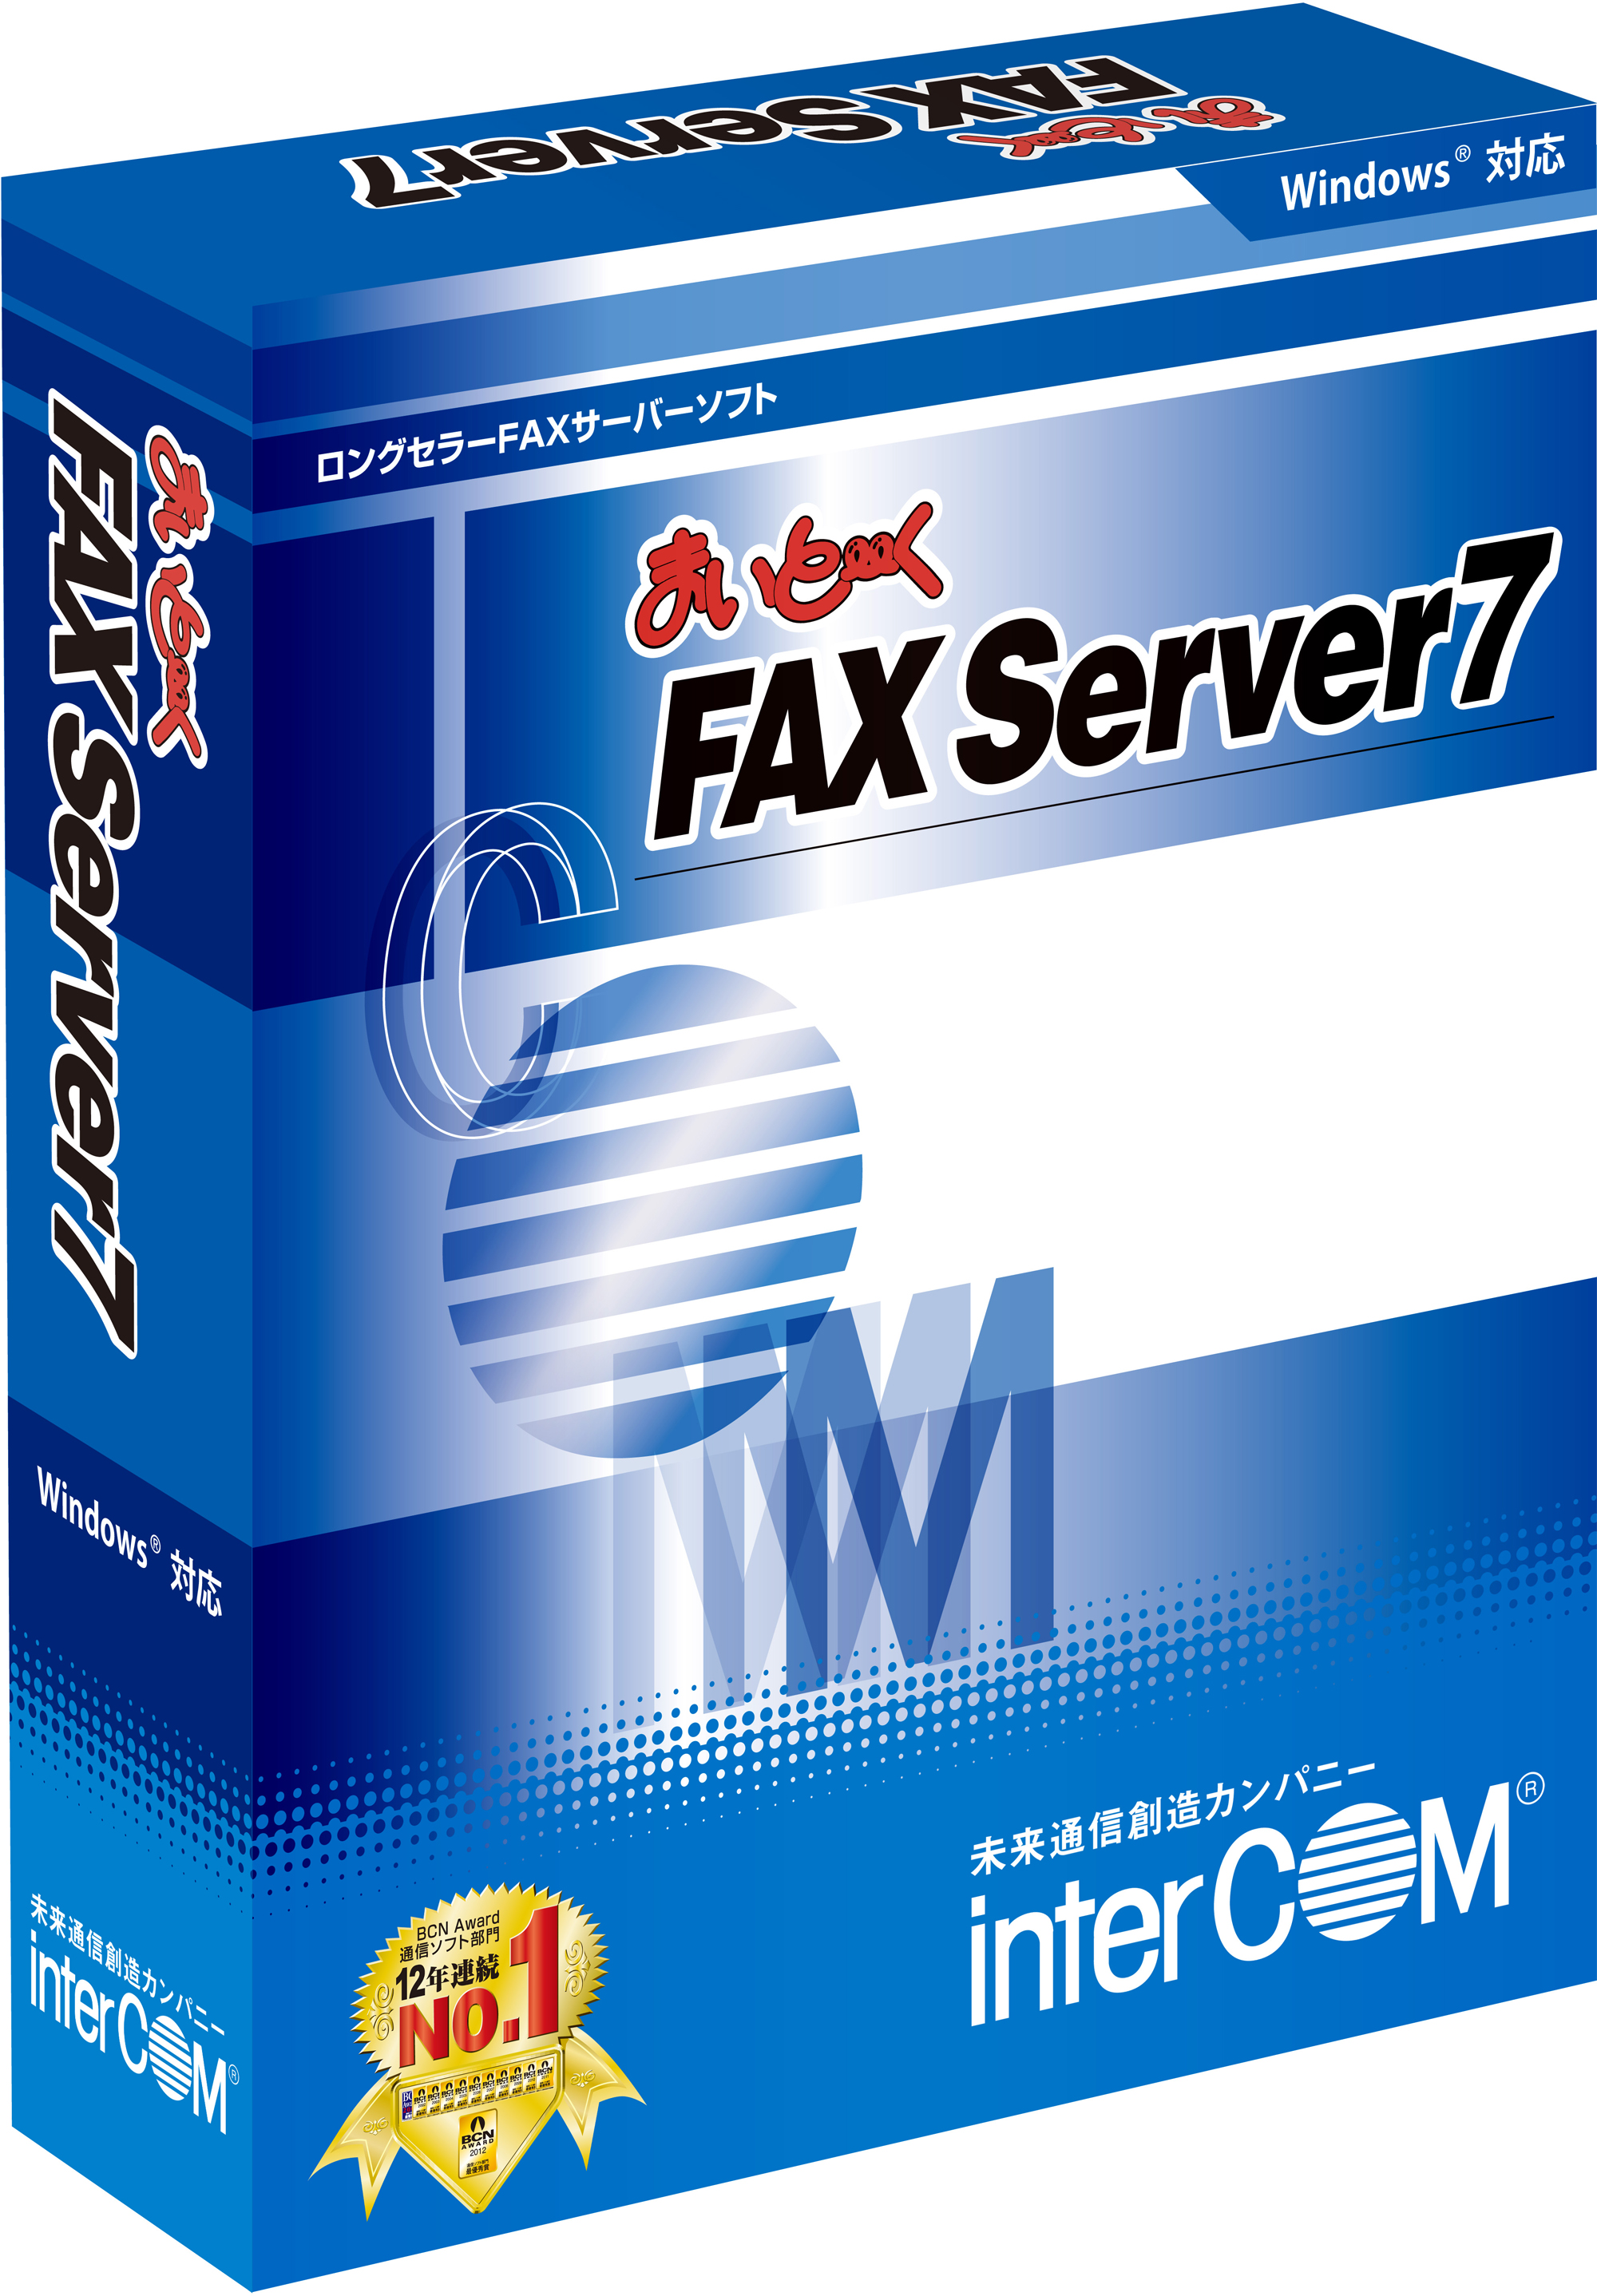 ロングセラーFAXサーバーソフト「まいと～く FAX Server 7」に 設置・導入、メンテナンスが簡単なUSB接続型モデムをセットにした ラインアップを新発売